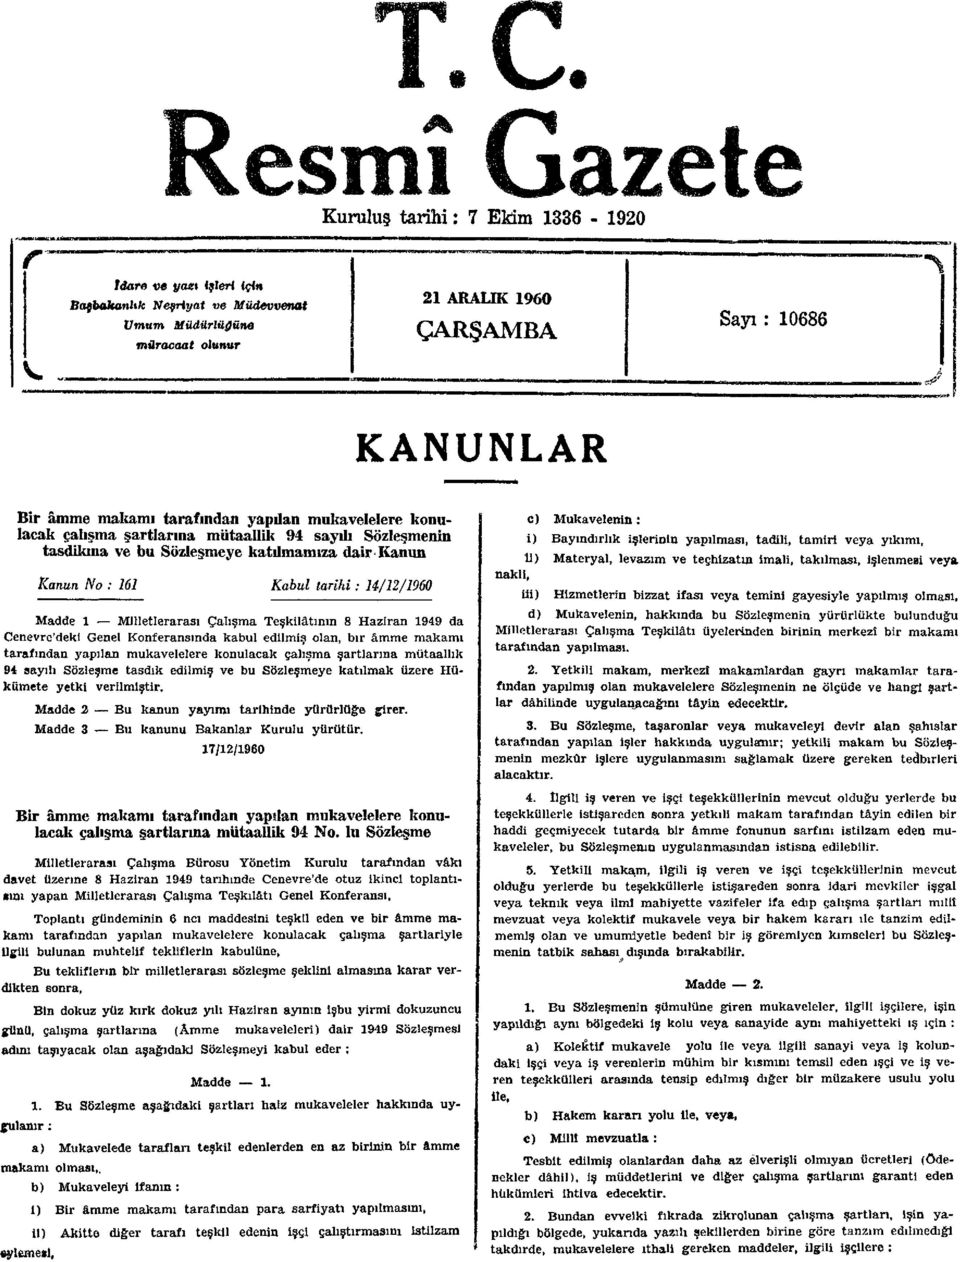 Milletlerarası Çalışma Teşkilâtının 8 Haziran 1949 da Cenevre'deki Genel Konferansında kabul edilmiş olan, bir âmme makamı tarafından yapılan mukavelelere konulacak çalışma şartlarına mütaallik 94